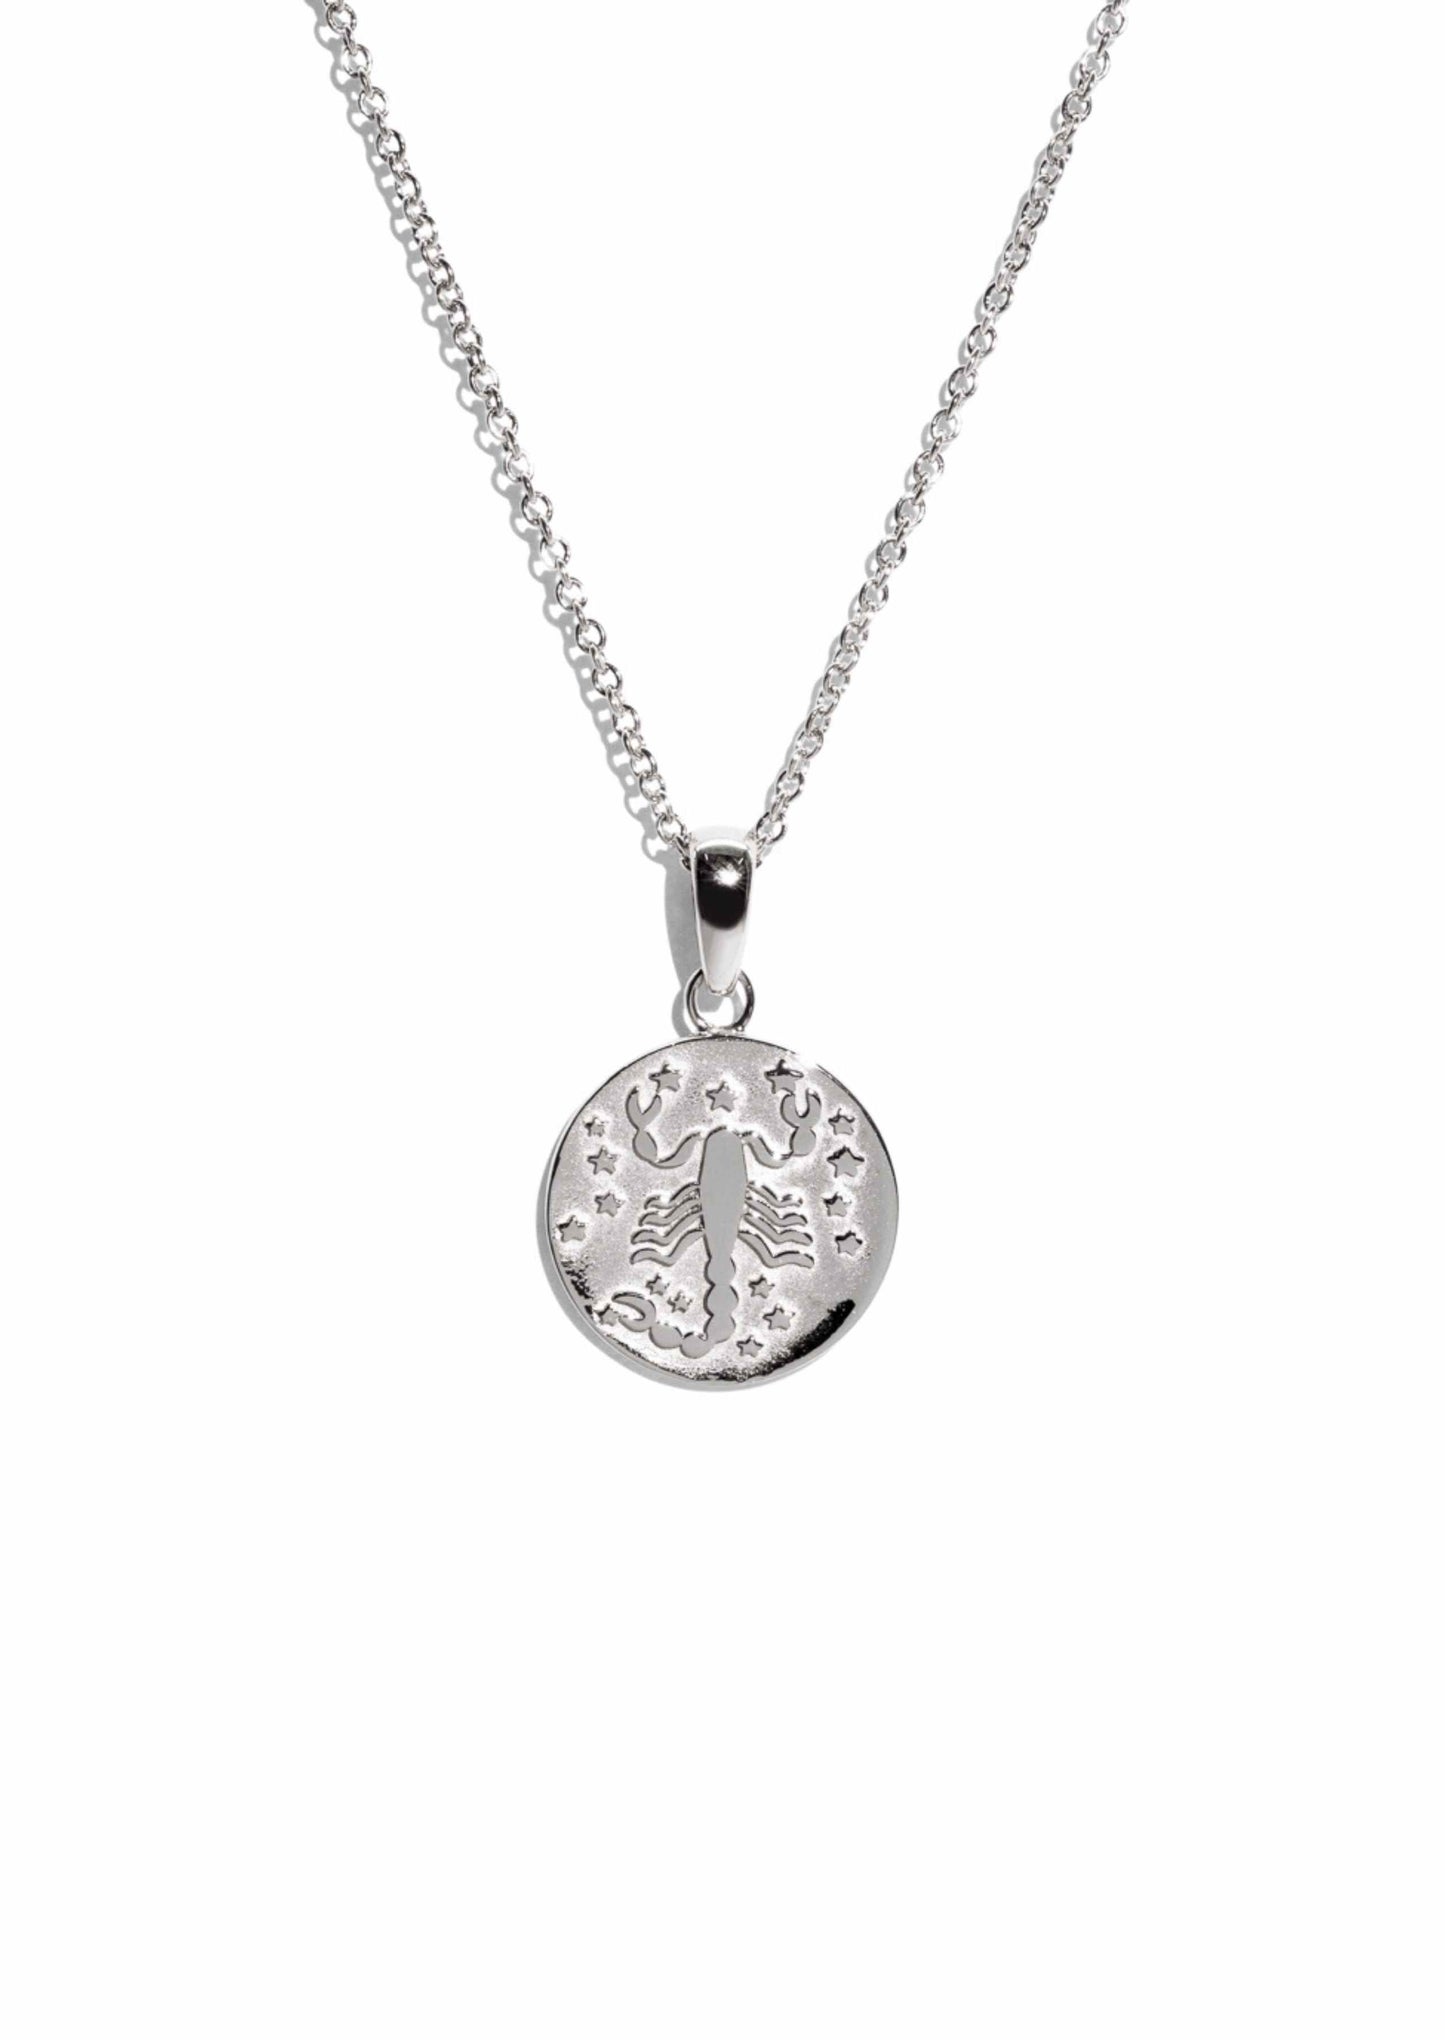 The Silver Scorpio Zodiac Necklace